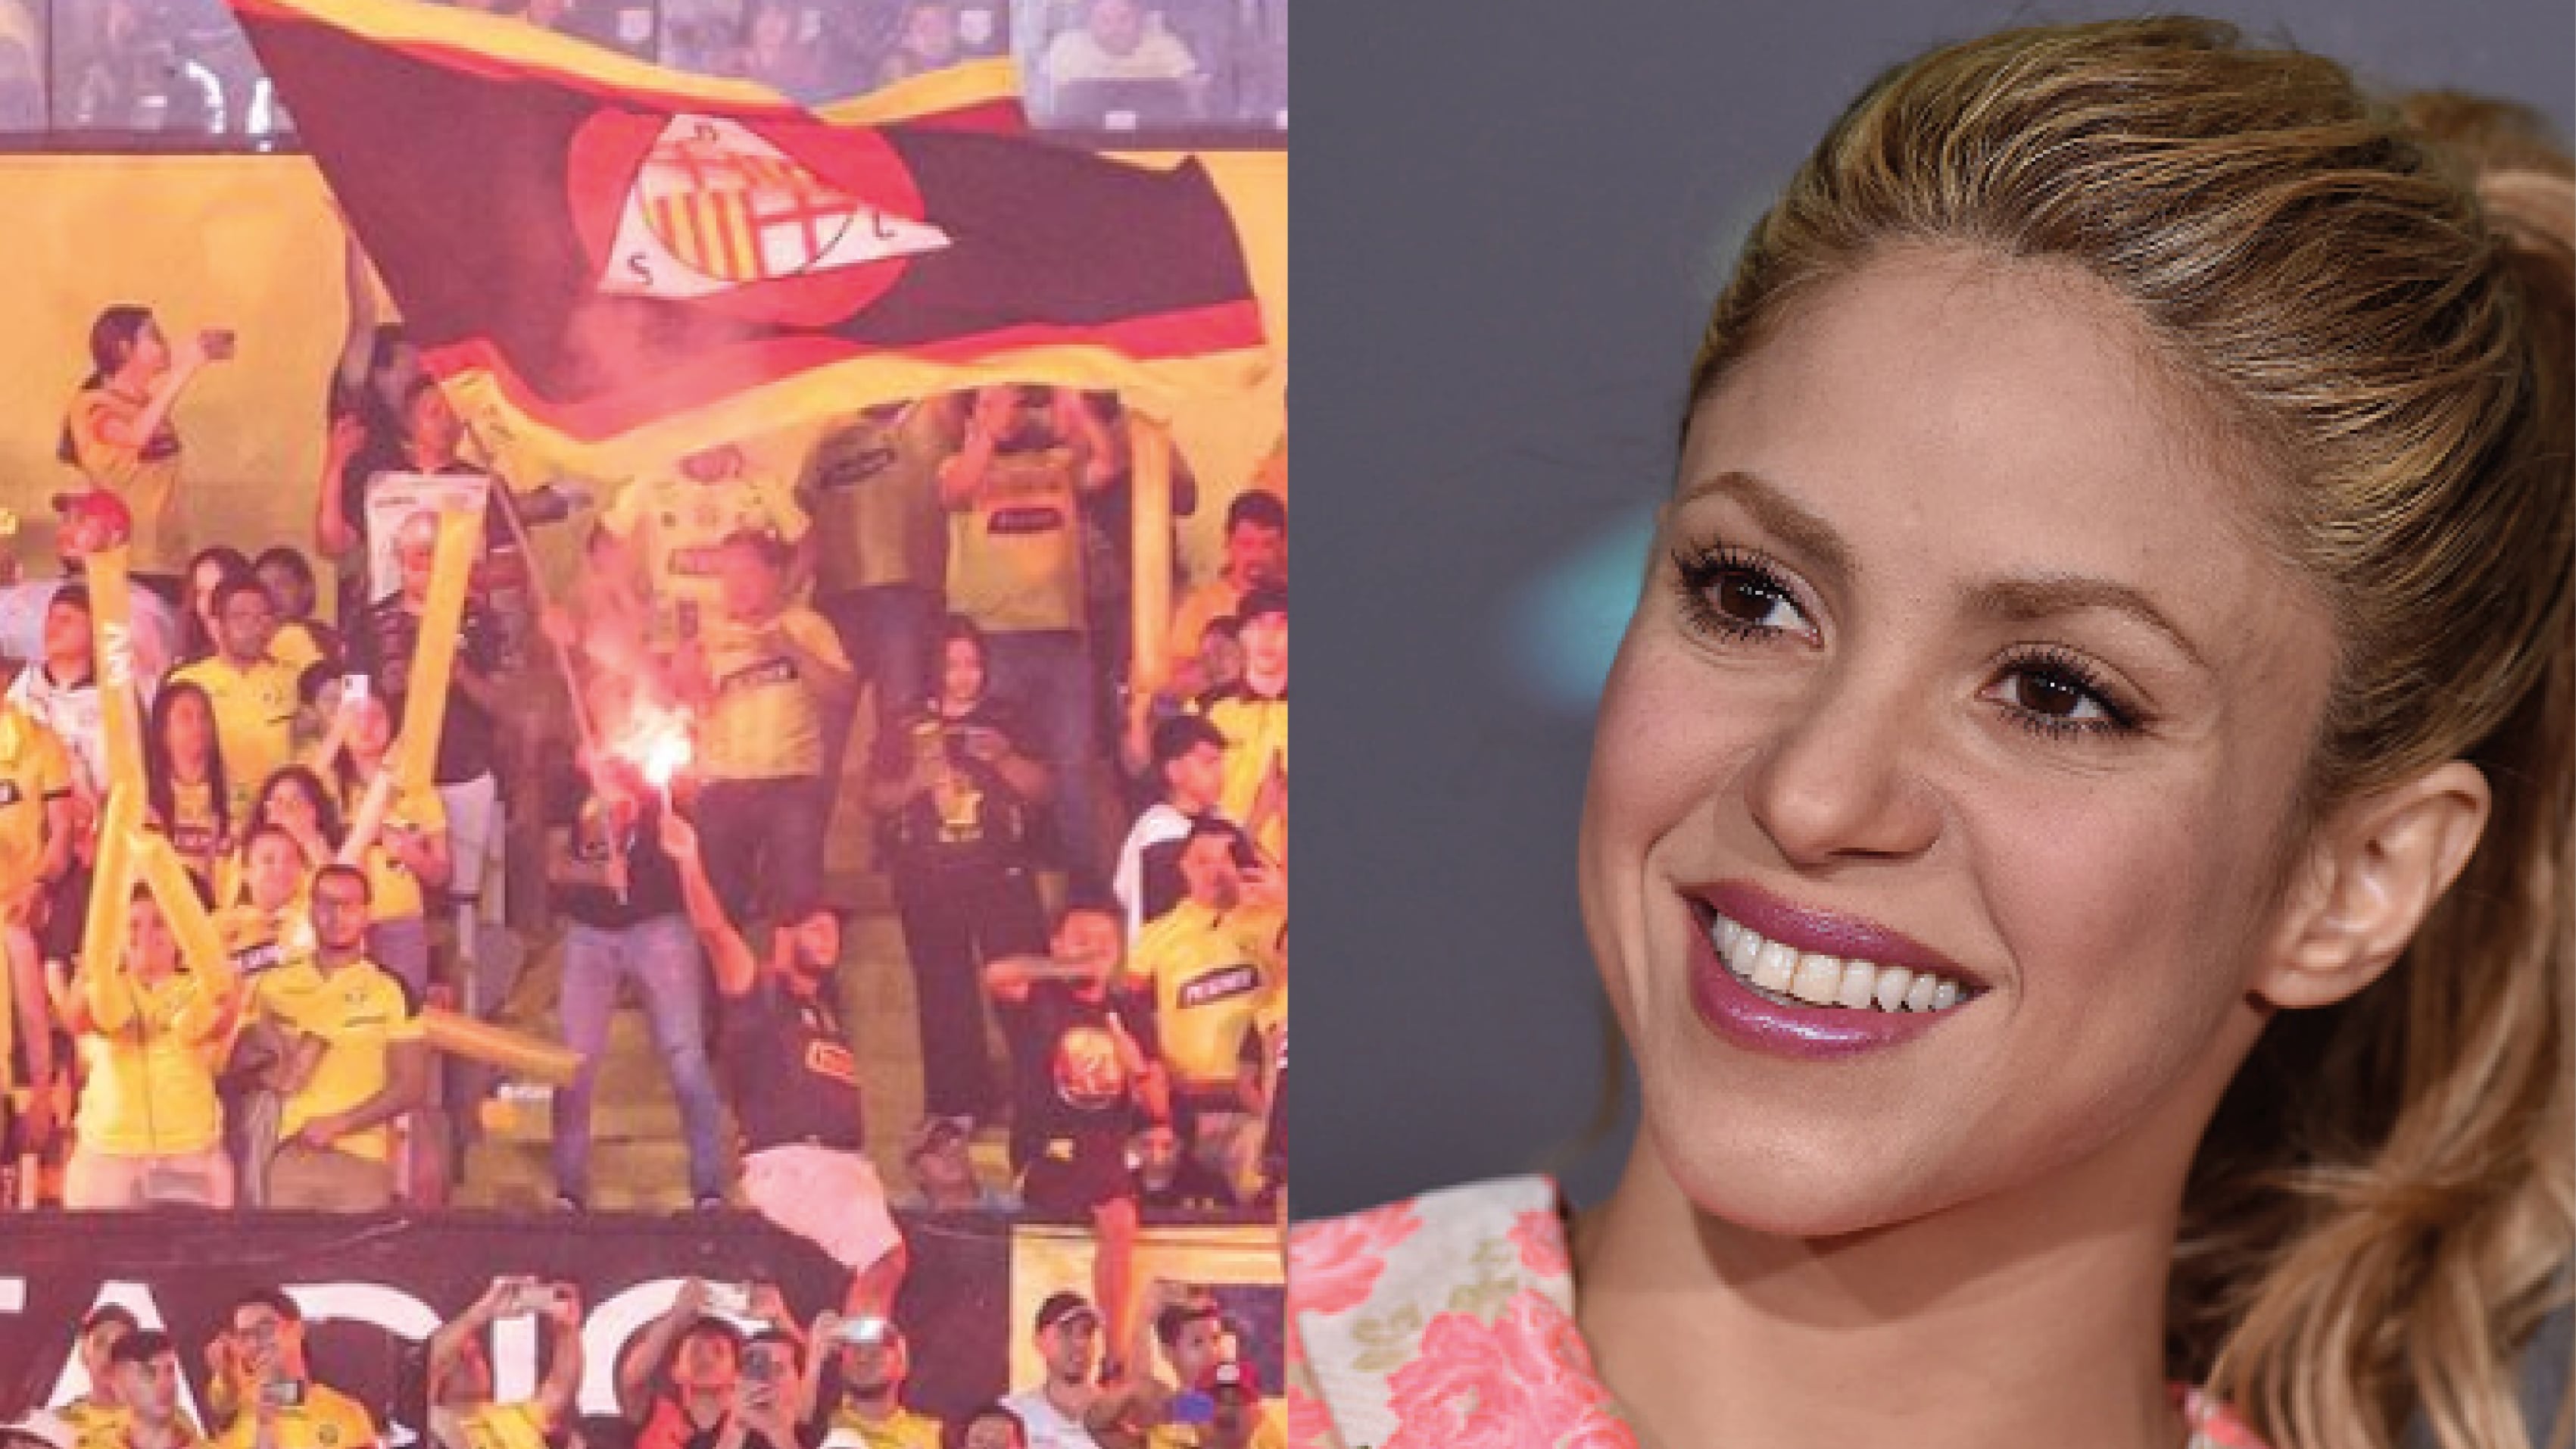 Cambian detalles de la canción de Shakira en la Noche Amarilla